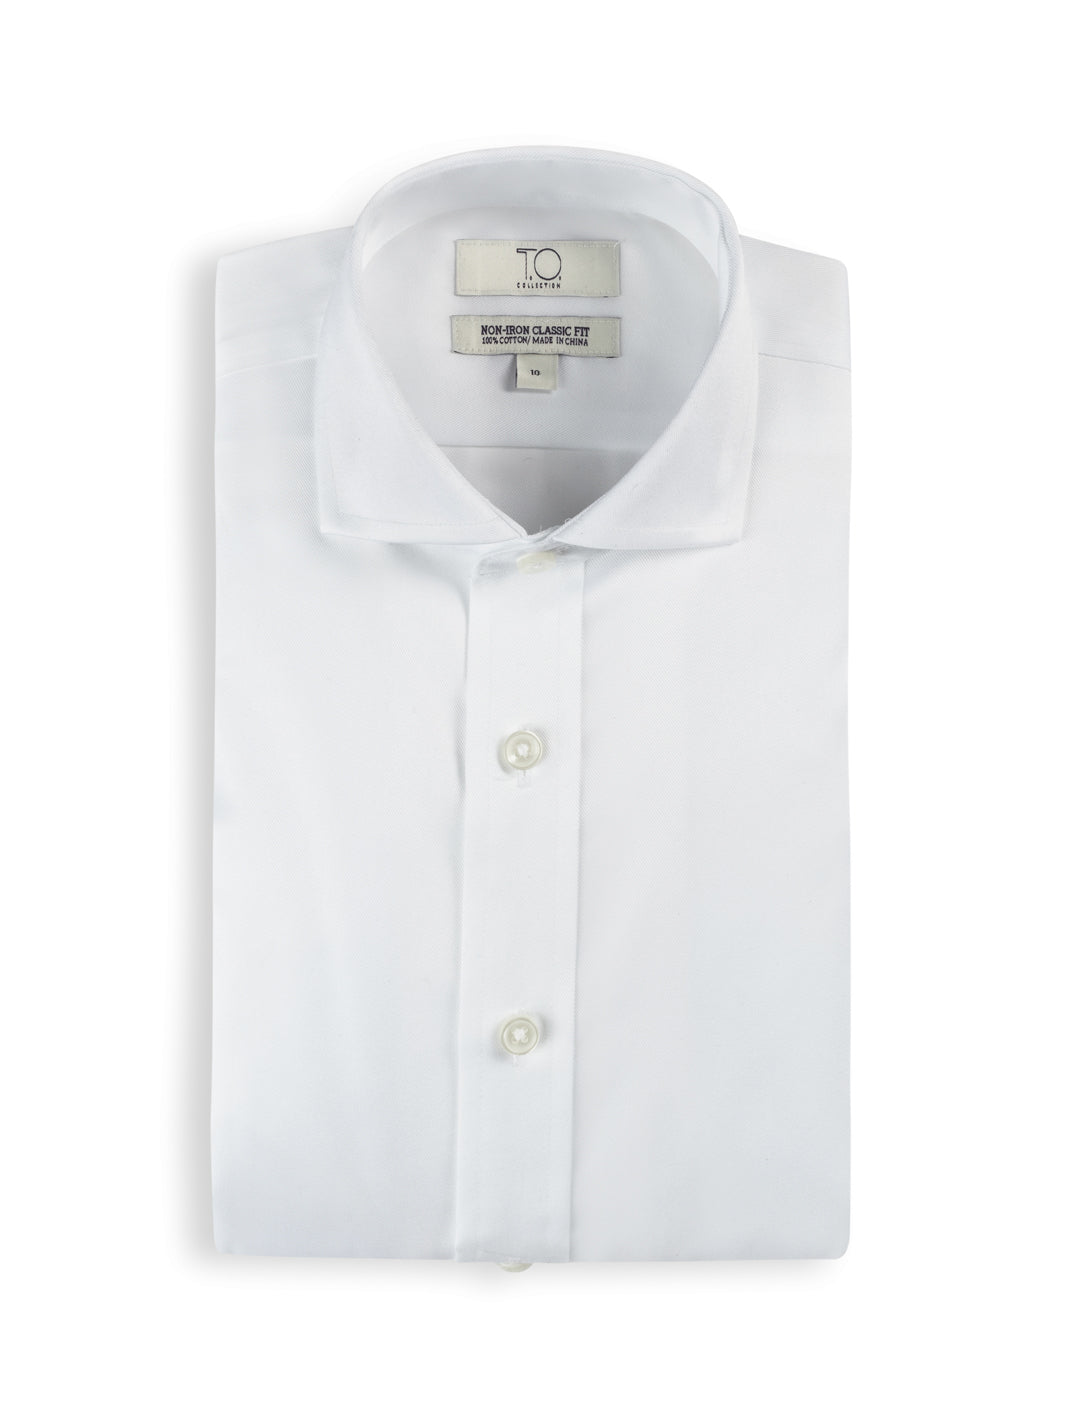 White Twill Non-Iron Shirt